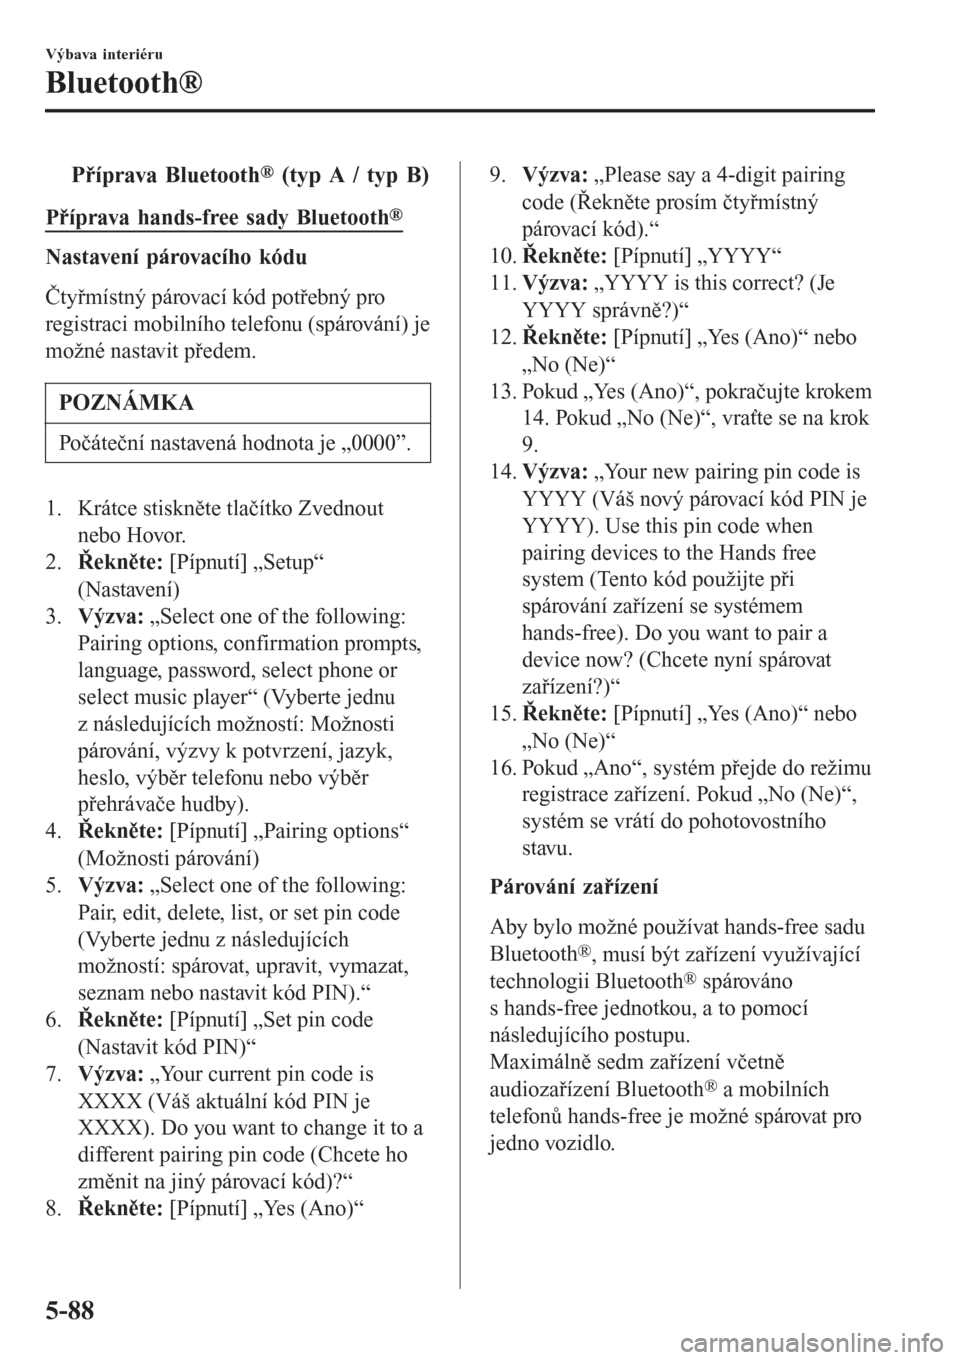 MAZDA MODEL CX-3 2015  Návod k obsluze (in Czech) tPříprava Bluetooth® (typ A / typ B)
Příprava hands-free sady Bluetooth®
Nastavení párovacího kódu
Čtyřmístný párovací kód potřebný pro
registraci mobilního telefonu (spárování)